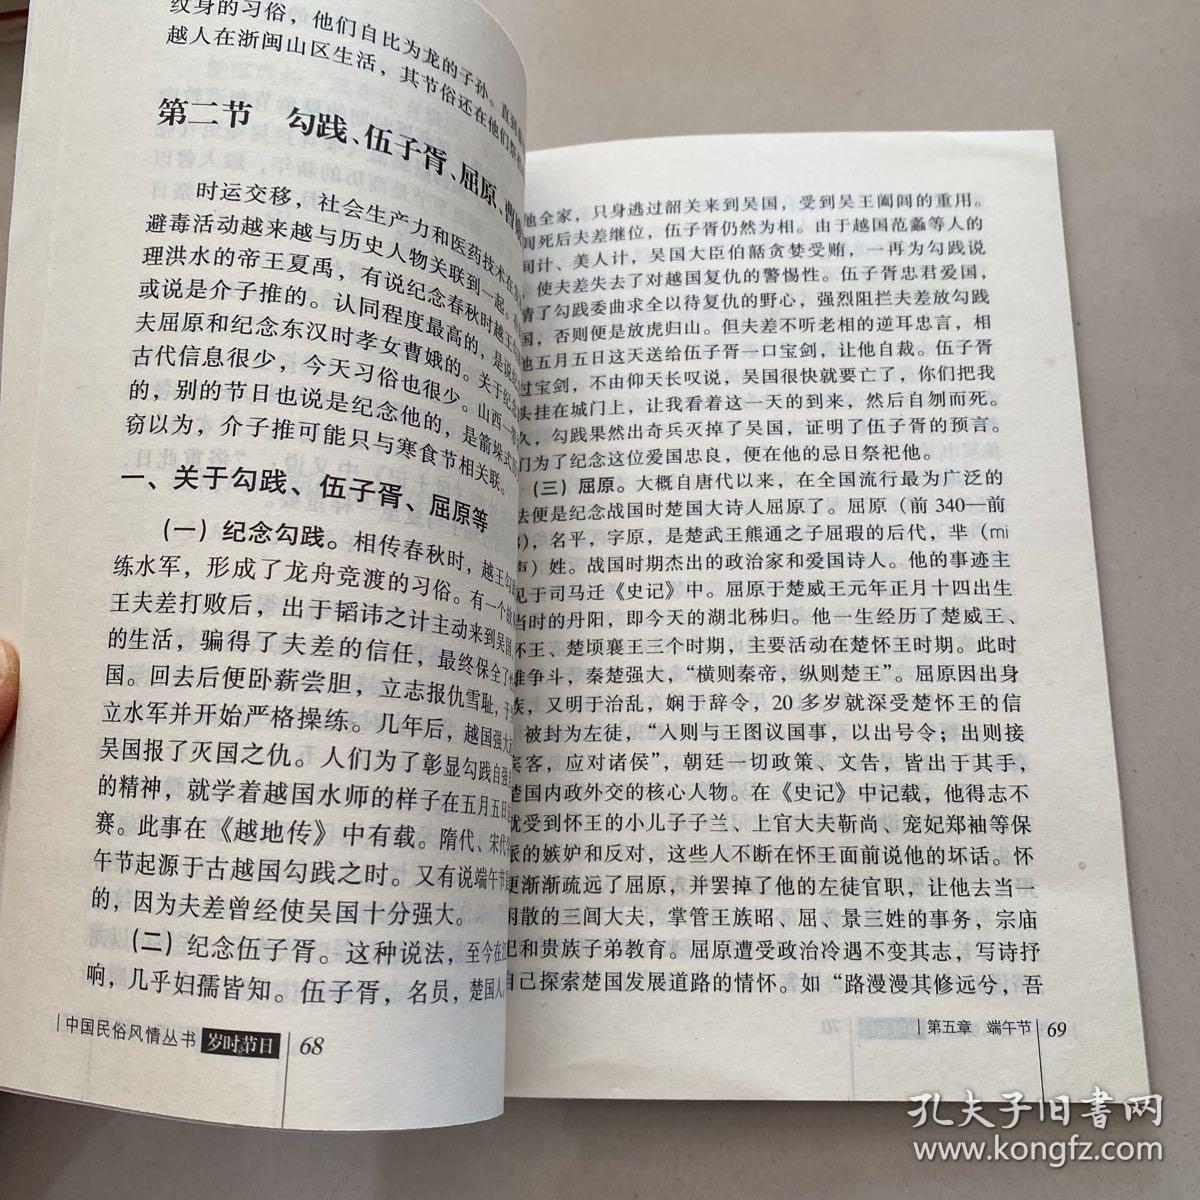 中国民俗风情丛书：岁时节日